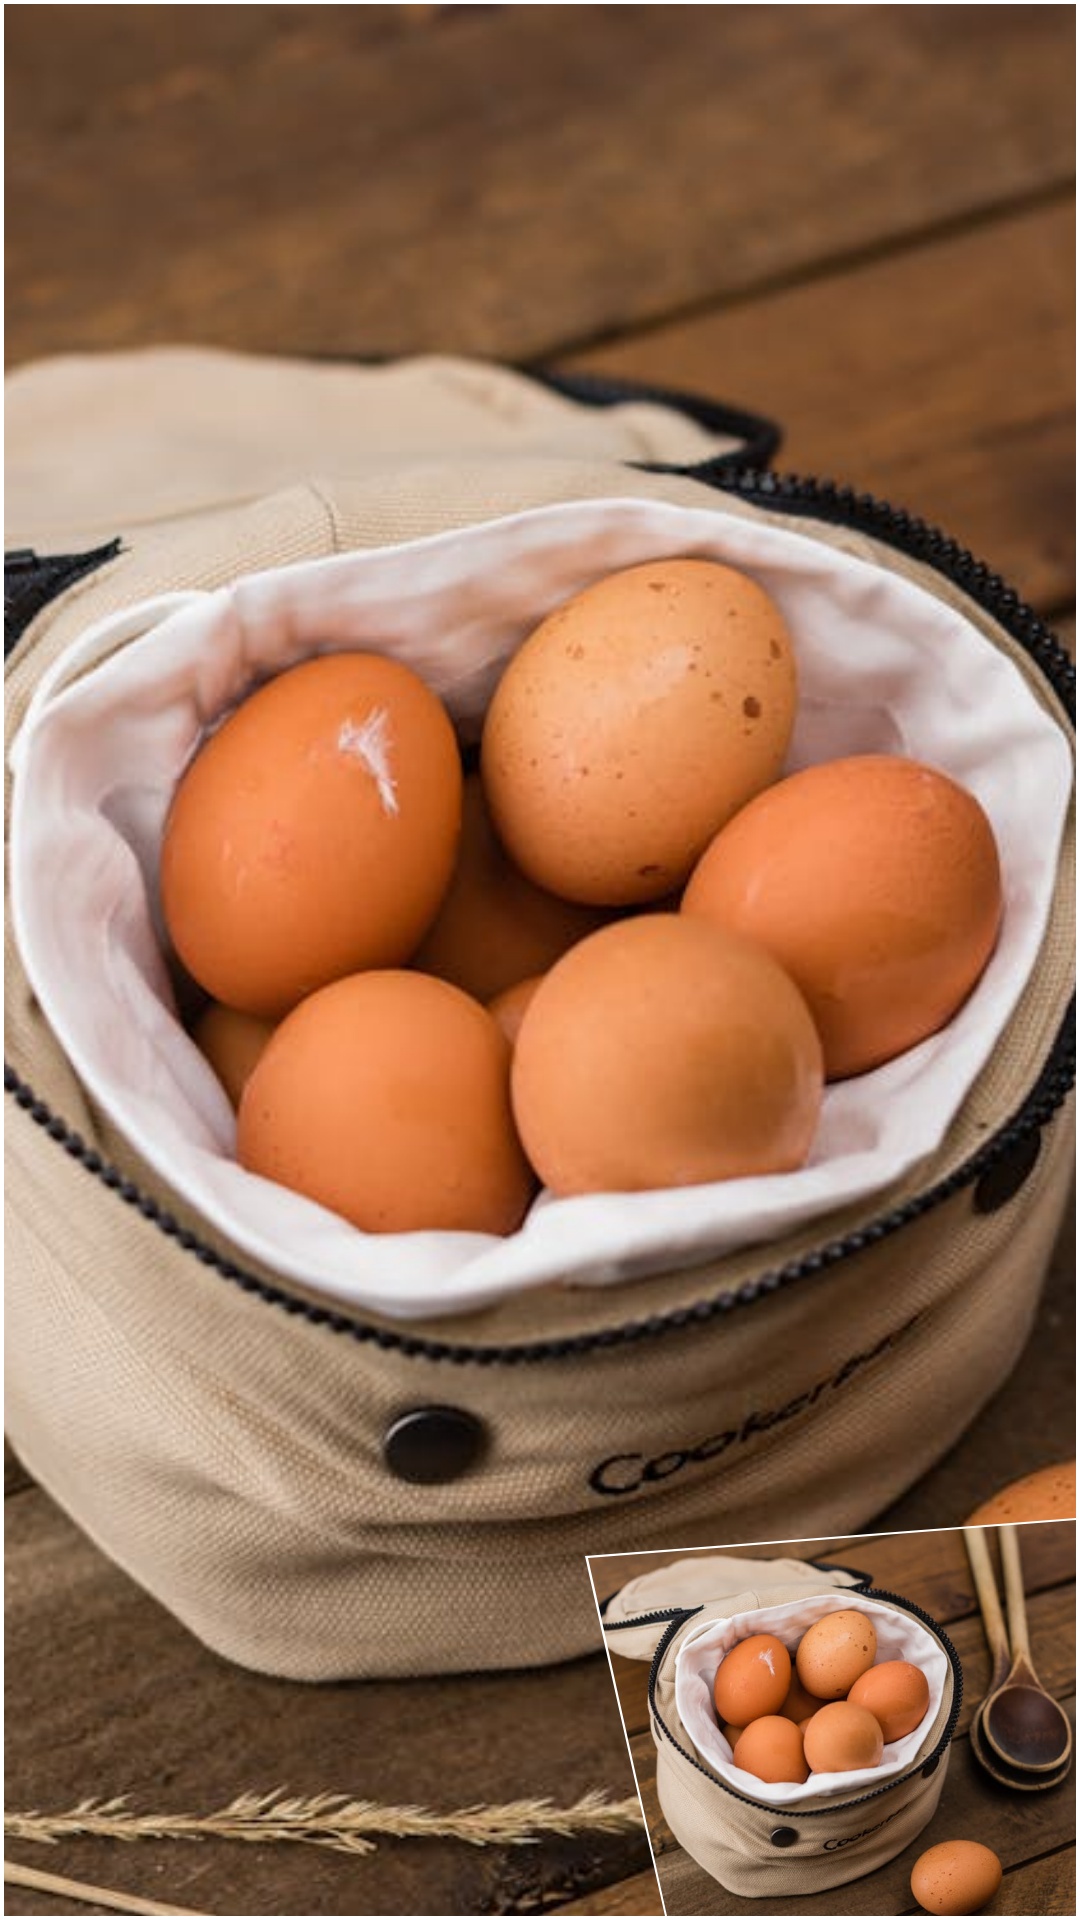 दुनिया के अलग-अलग देशों में क्या है अंडे की कीमत?